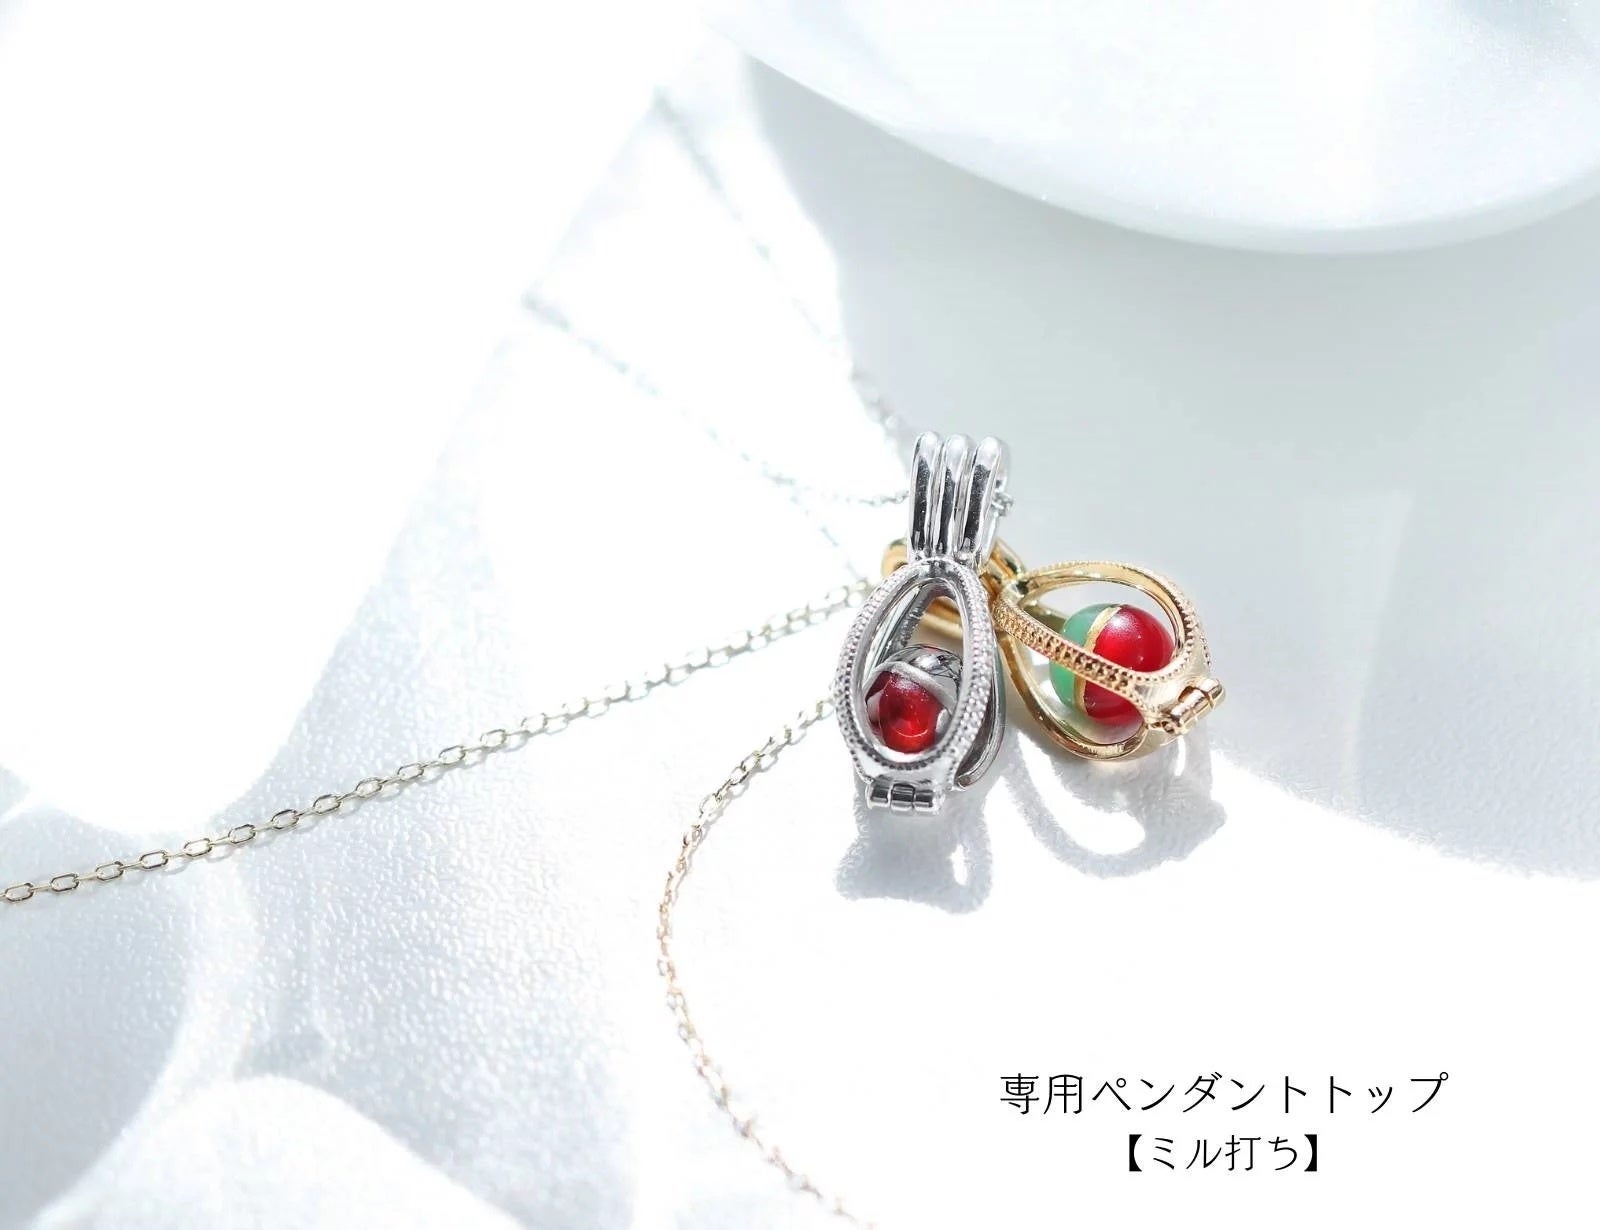 販売累計1000万円越えの『2色珠』に「より宝石らしい、美しい宝石を」目指したプレミアムシリーズが登場です。